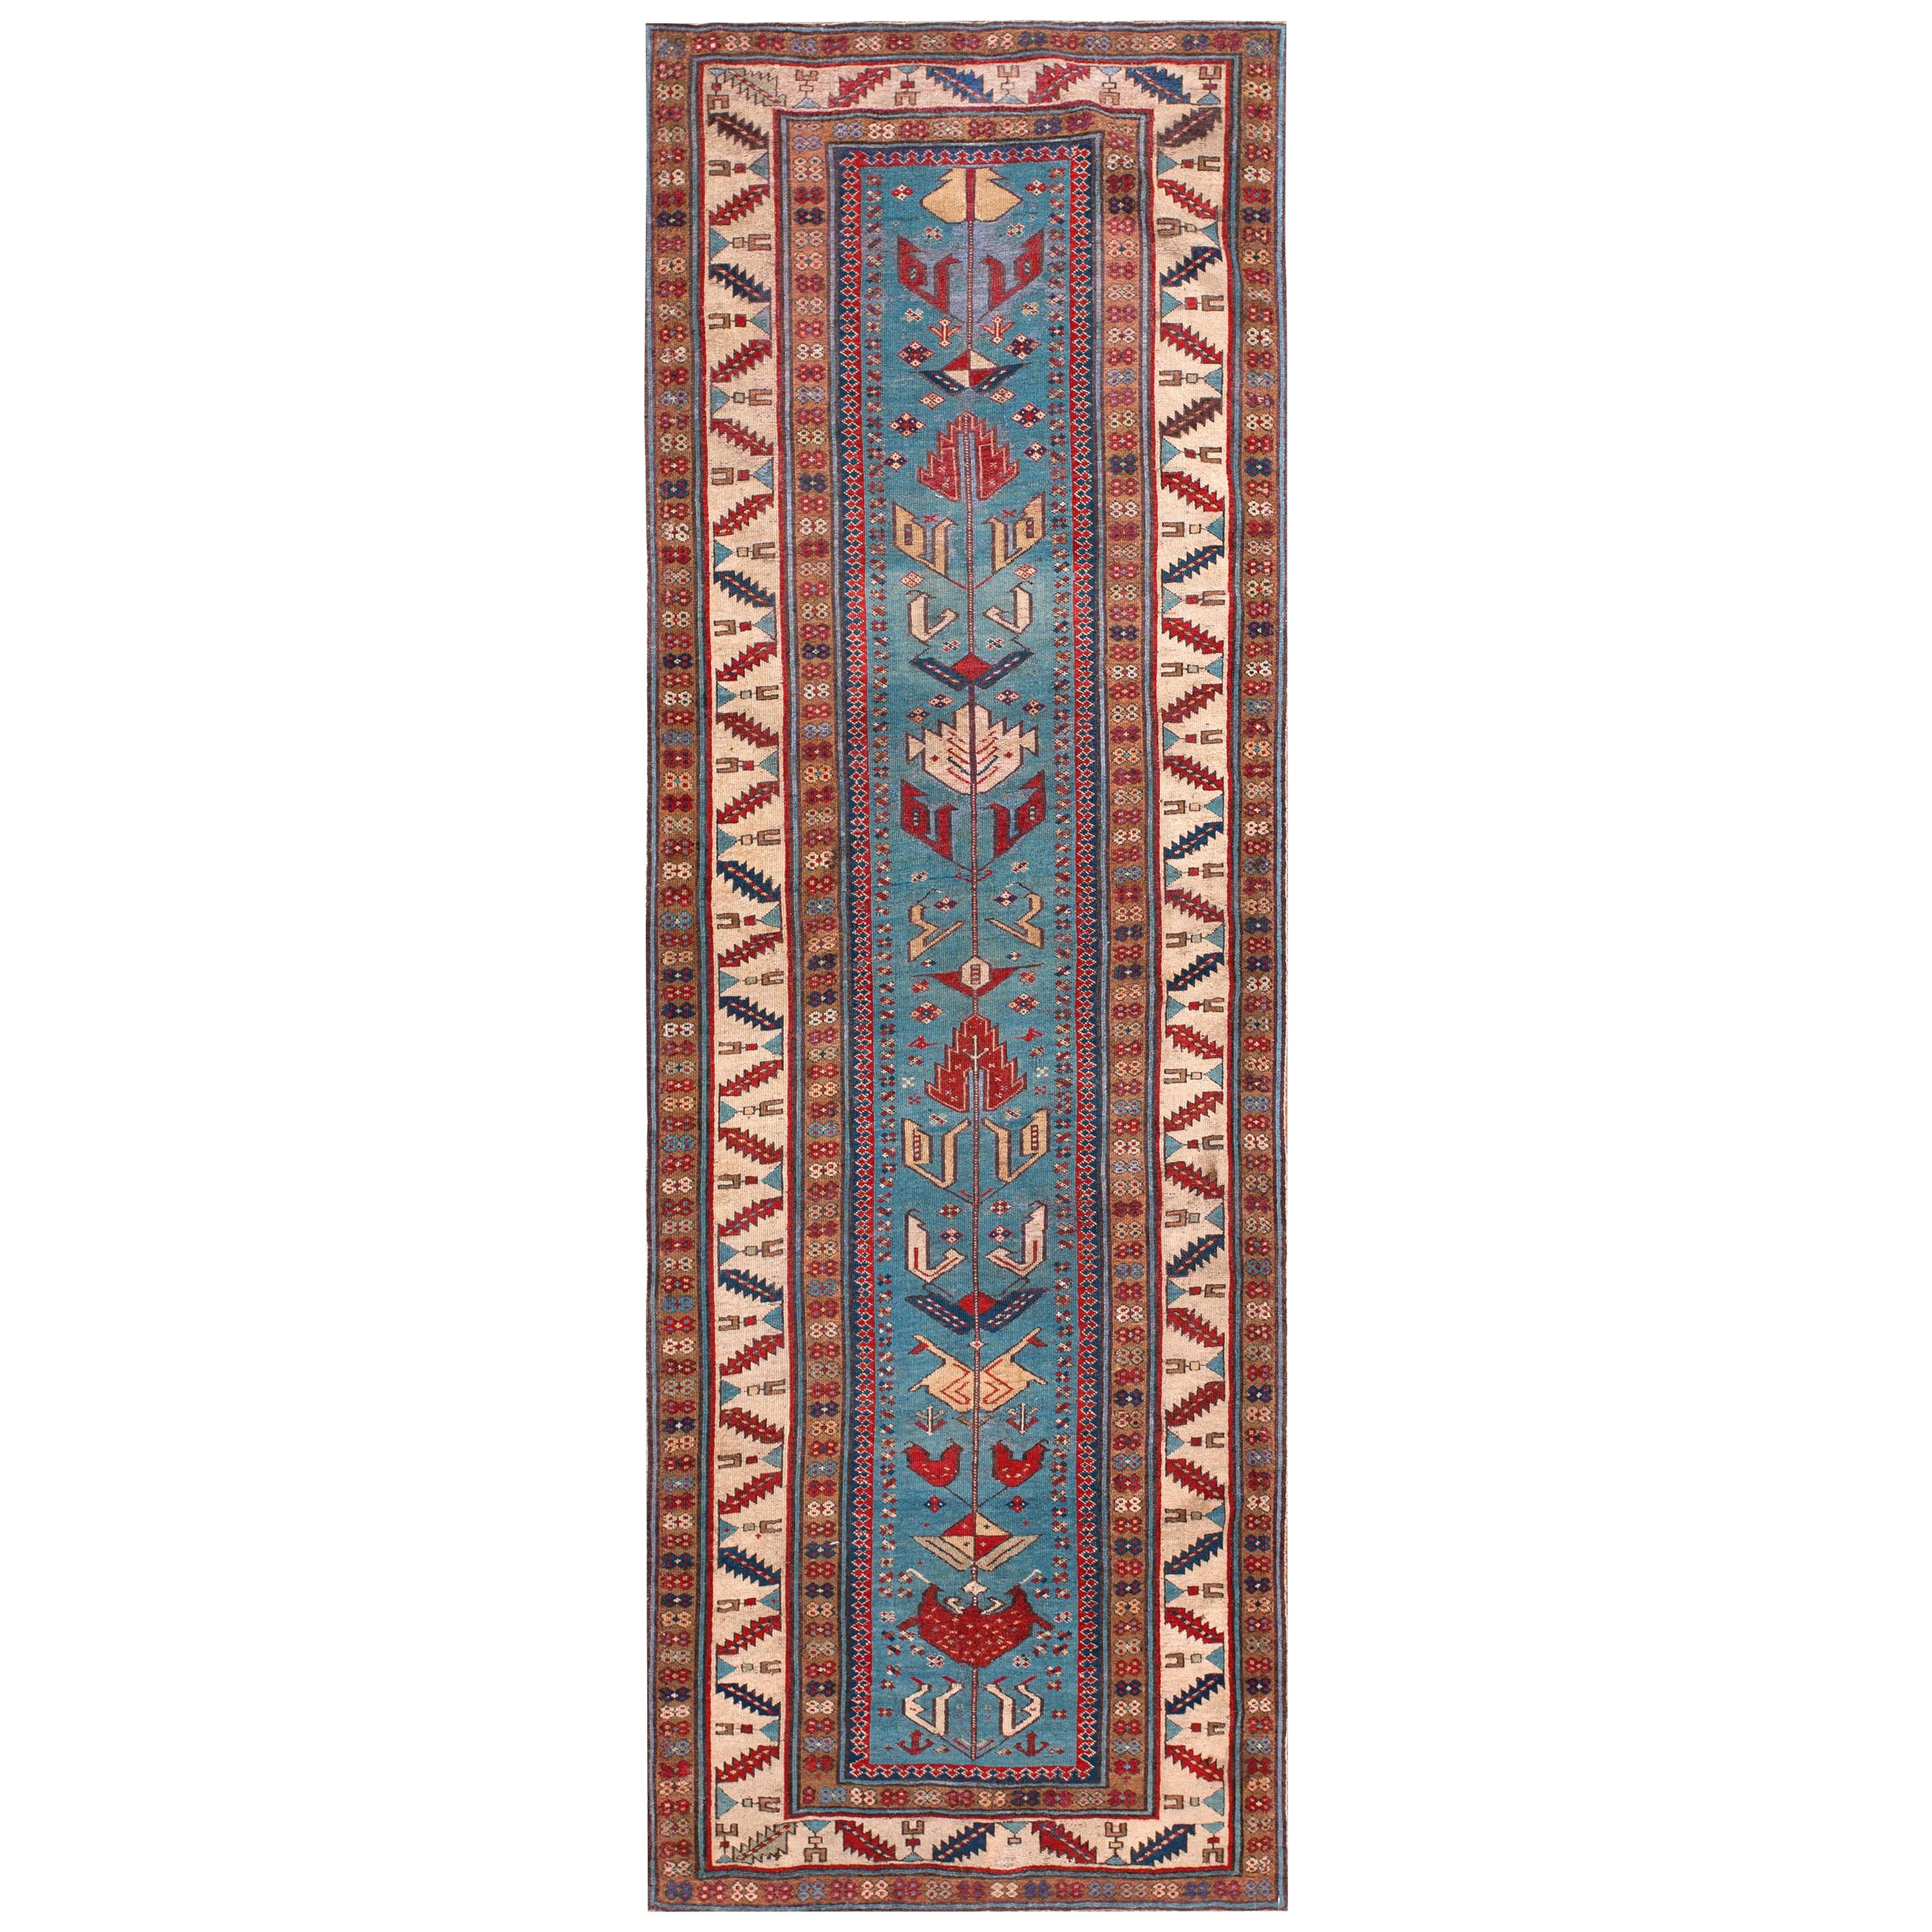 Mid 19th Century Caucasian Shirvan Carpet ( 3' x 9' - 91 x 274 )